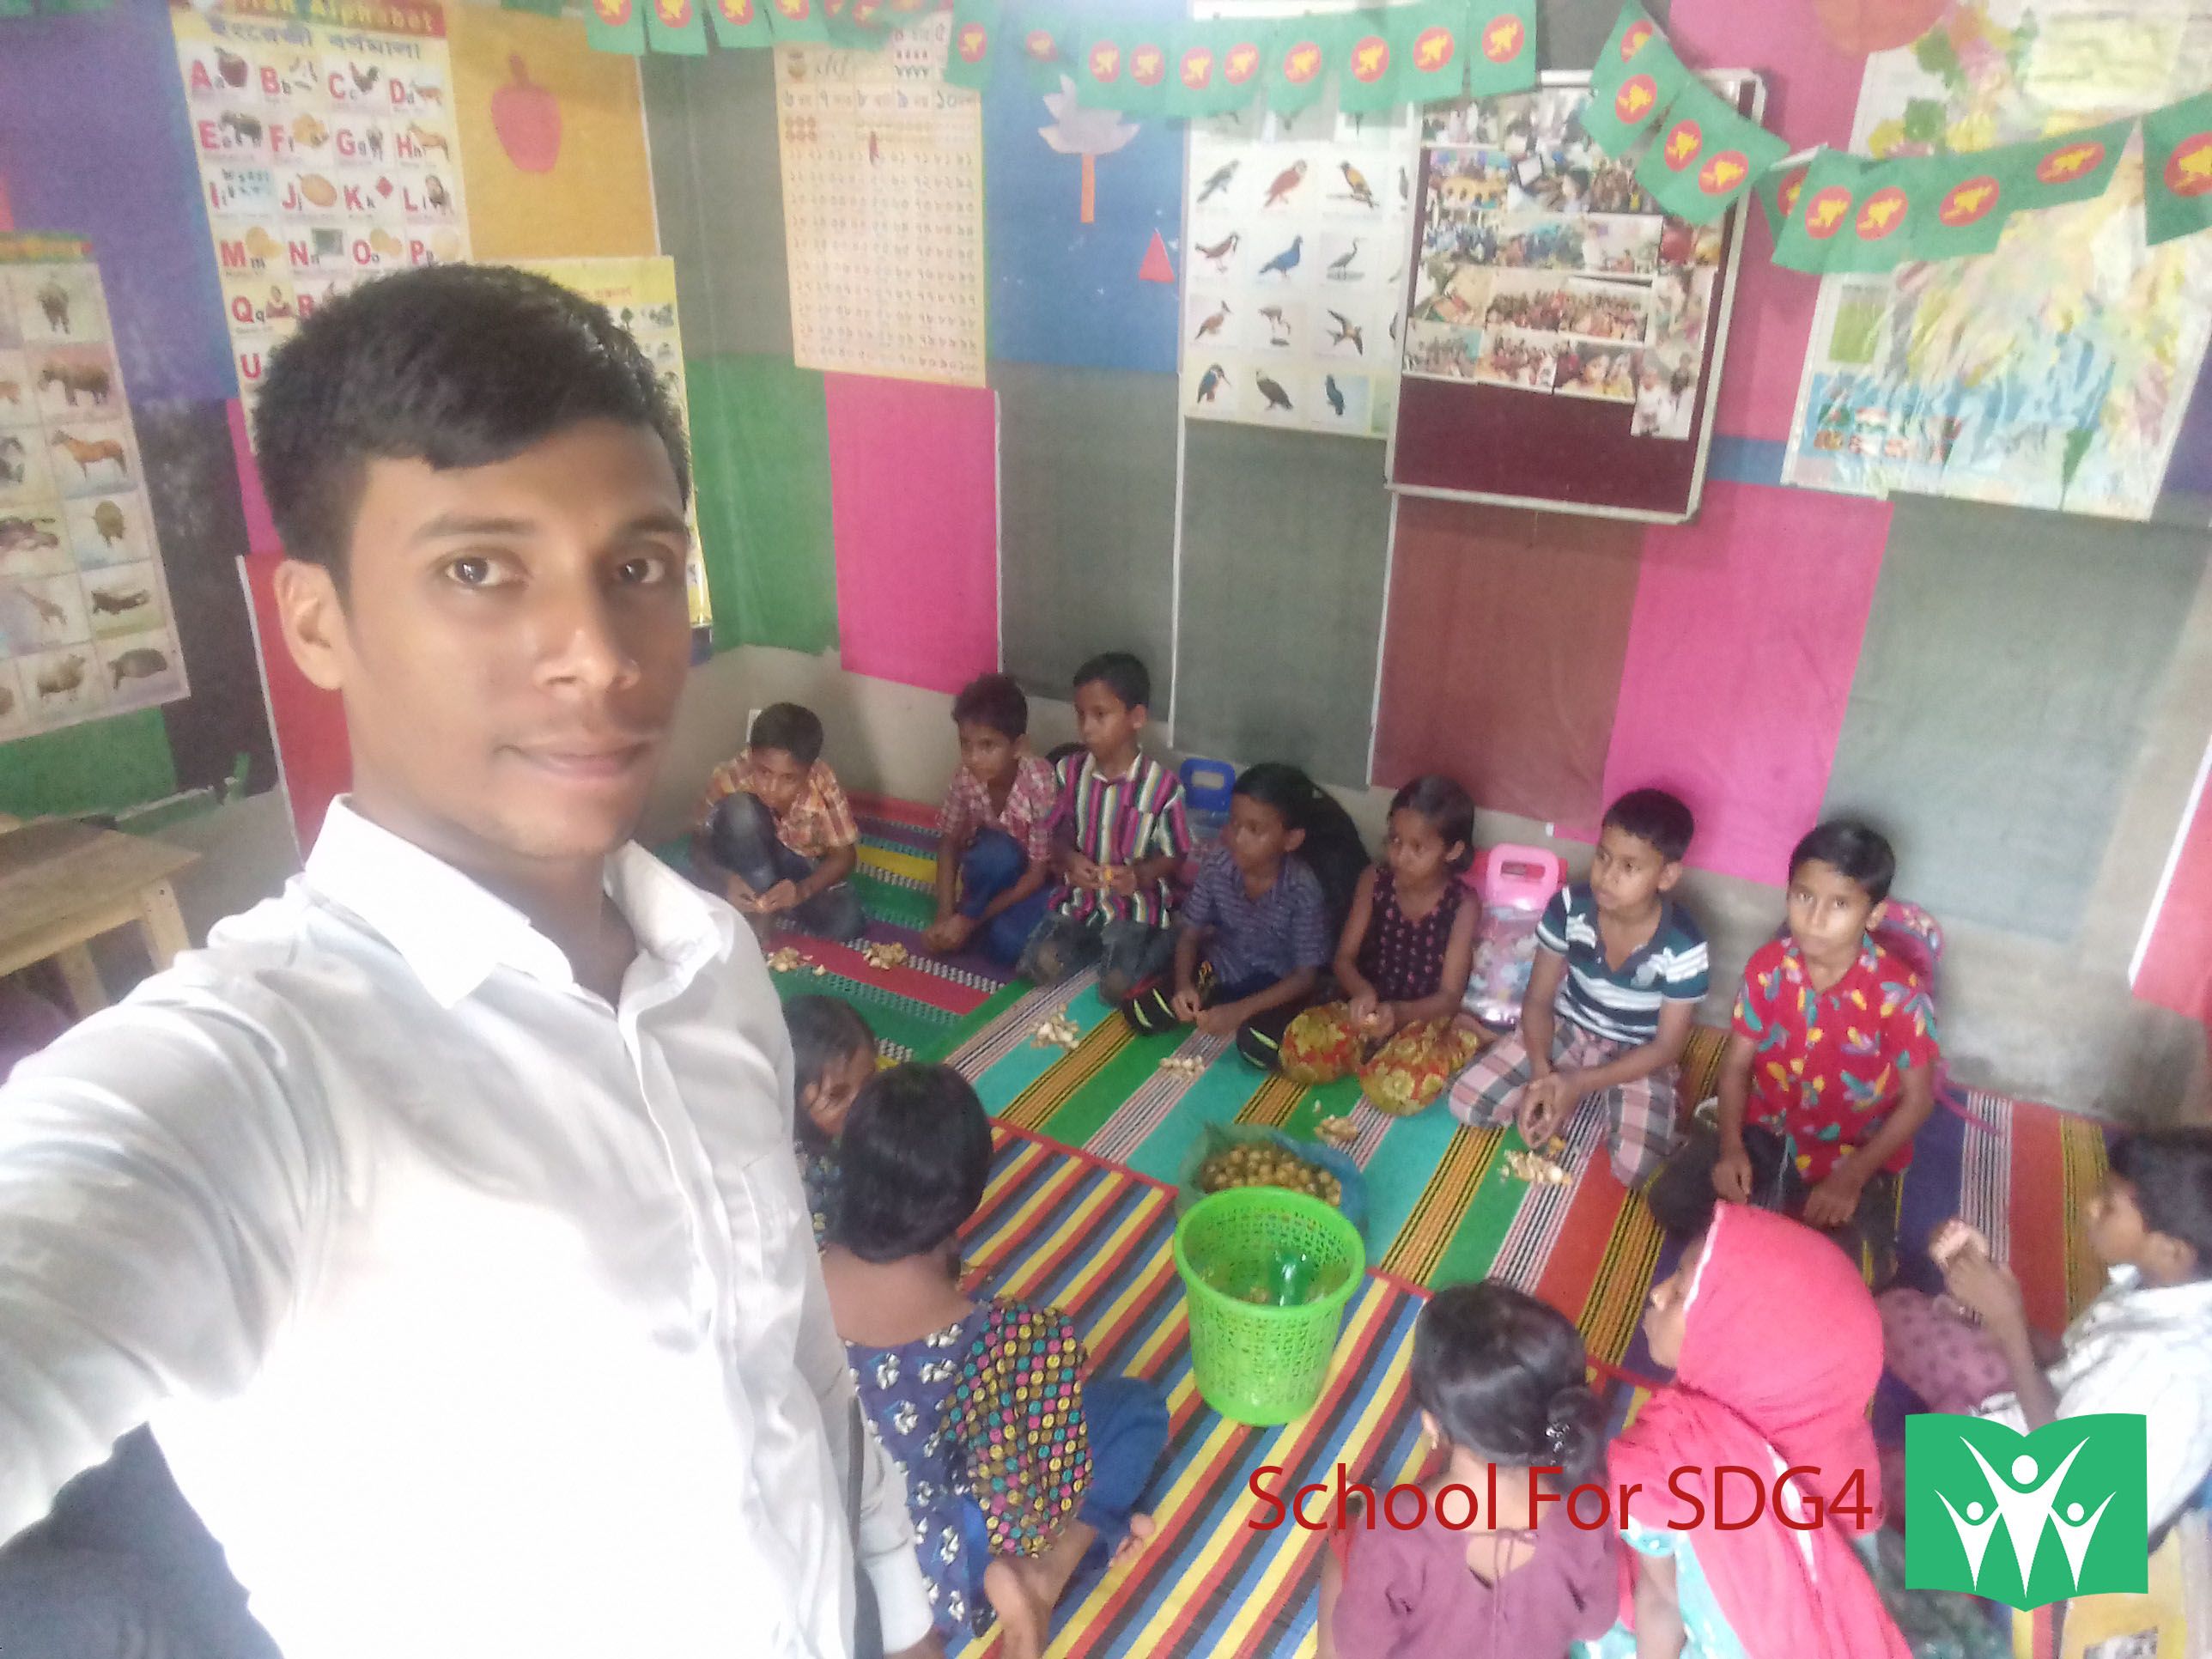 School For SDG4-Mohammed Abdul Aziz.jpg